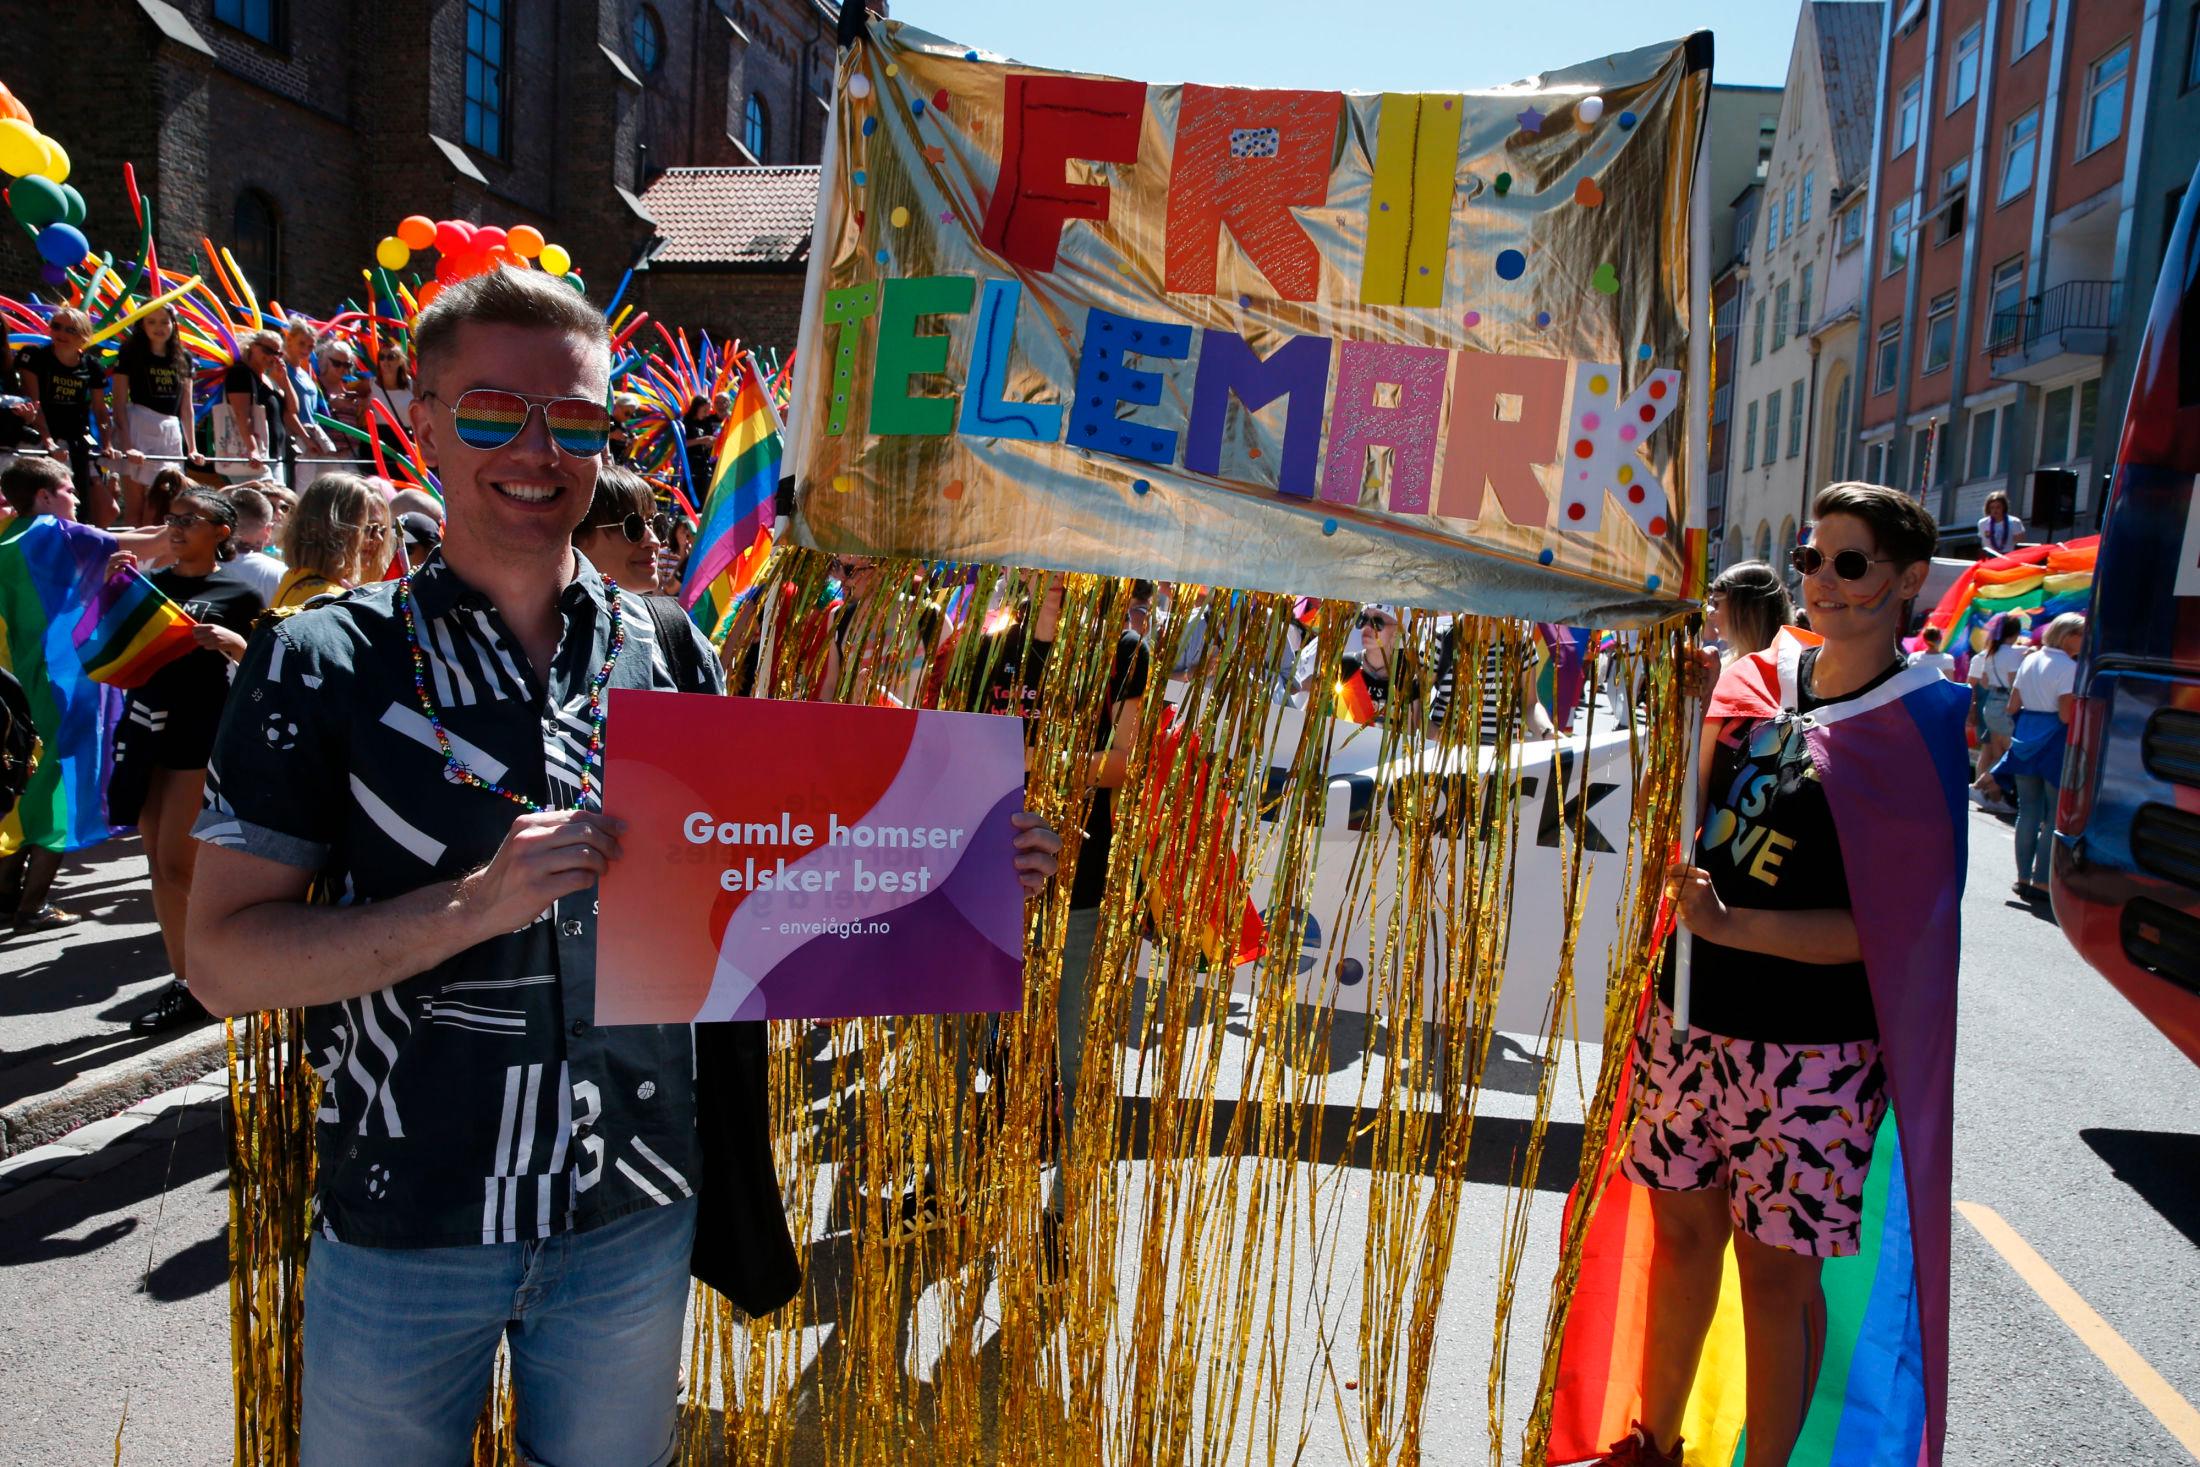 Wegar Berg Gundersen (38) viser stolt frem et skilt med teksten «Gamle homser elsker best» foran venninnene Silje Løvik (33) og Emilie Løvvik 37).
Foto: TROND SOLBERG, VG